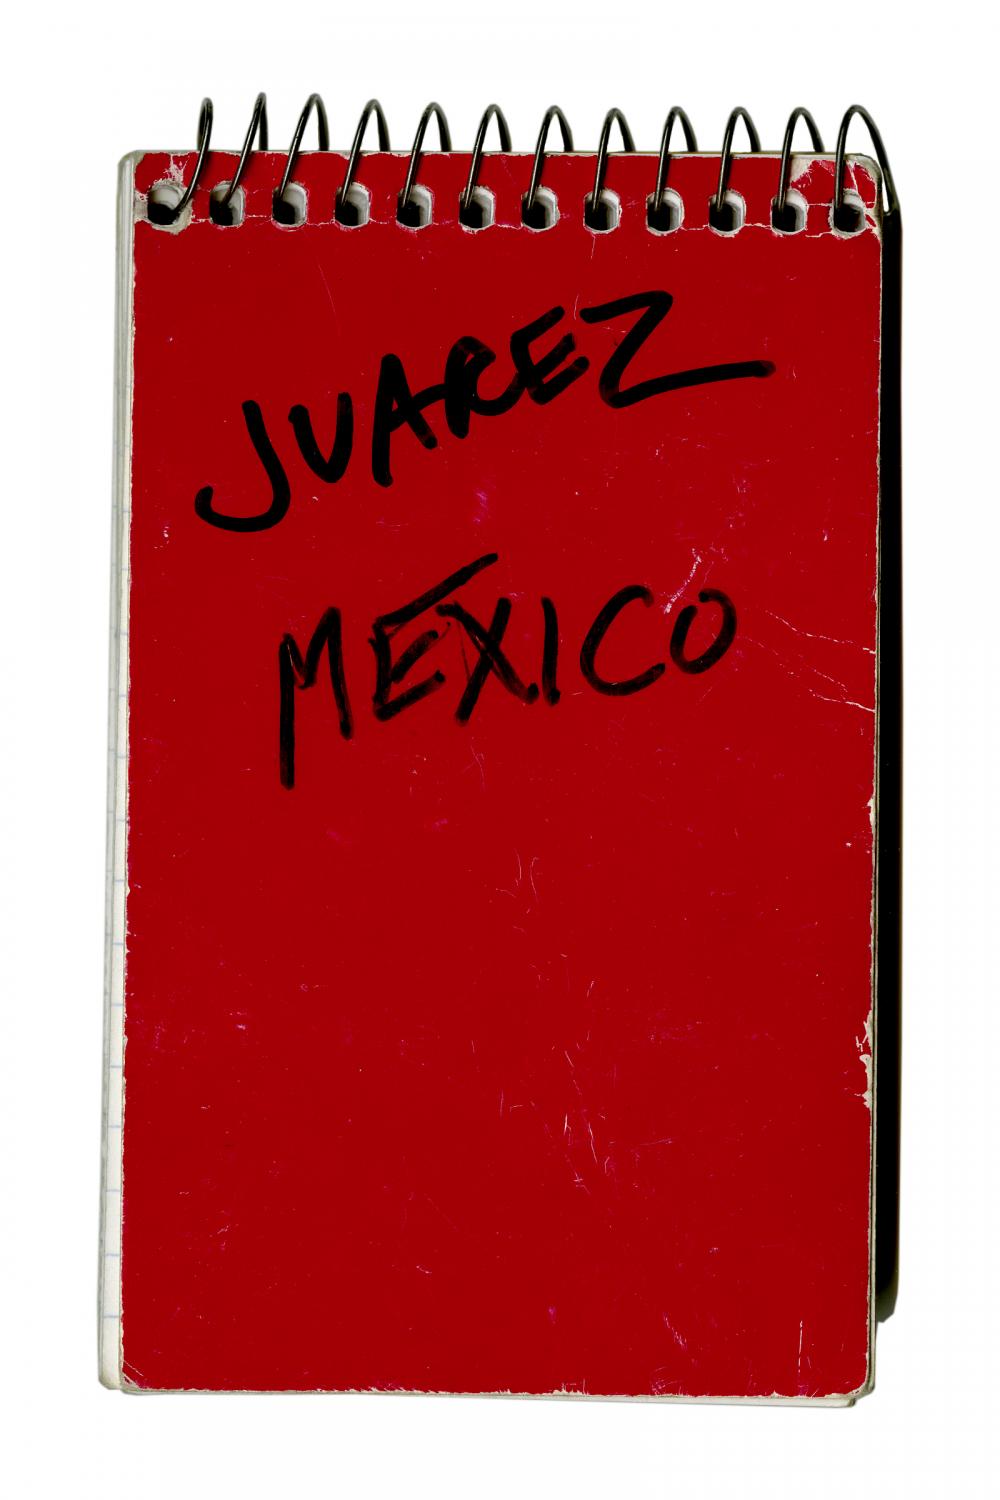 Missing Women of Juarez (1998)